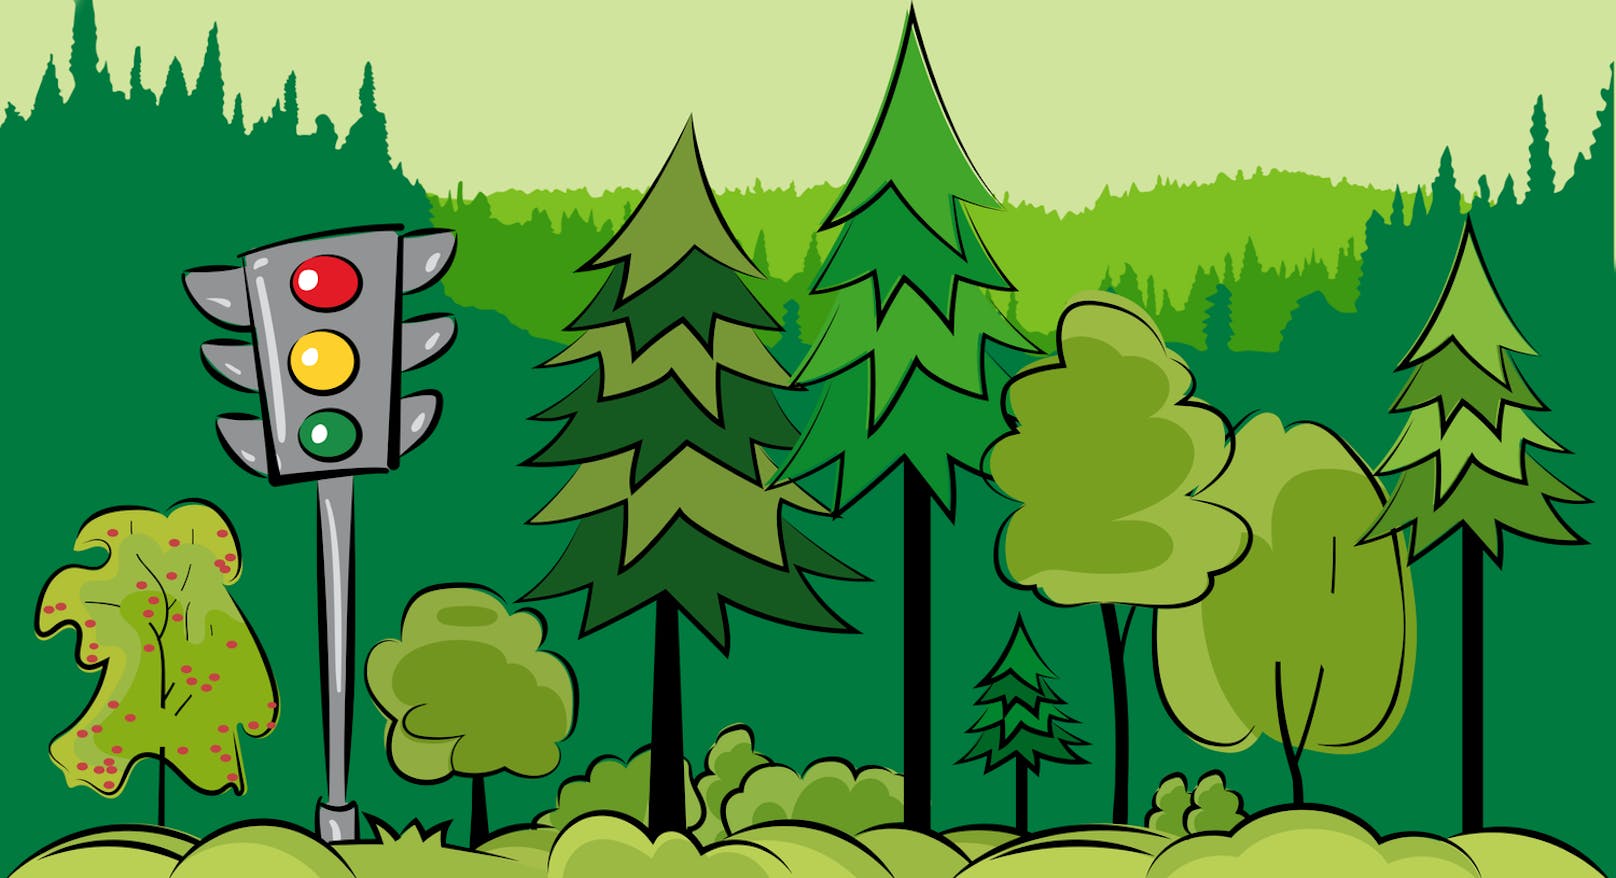 Baumartenampel: Ein Tool für Waldbesitzer:innen, um leichter zu erkennen, welche Baumarten eine gute Zukunft haben.